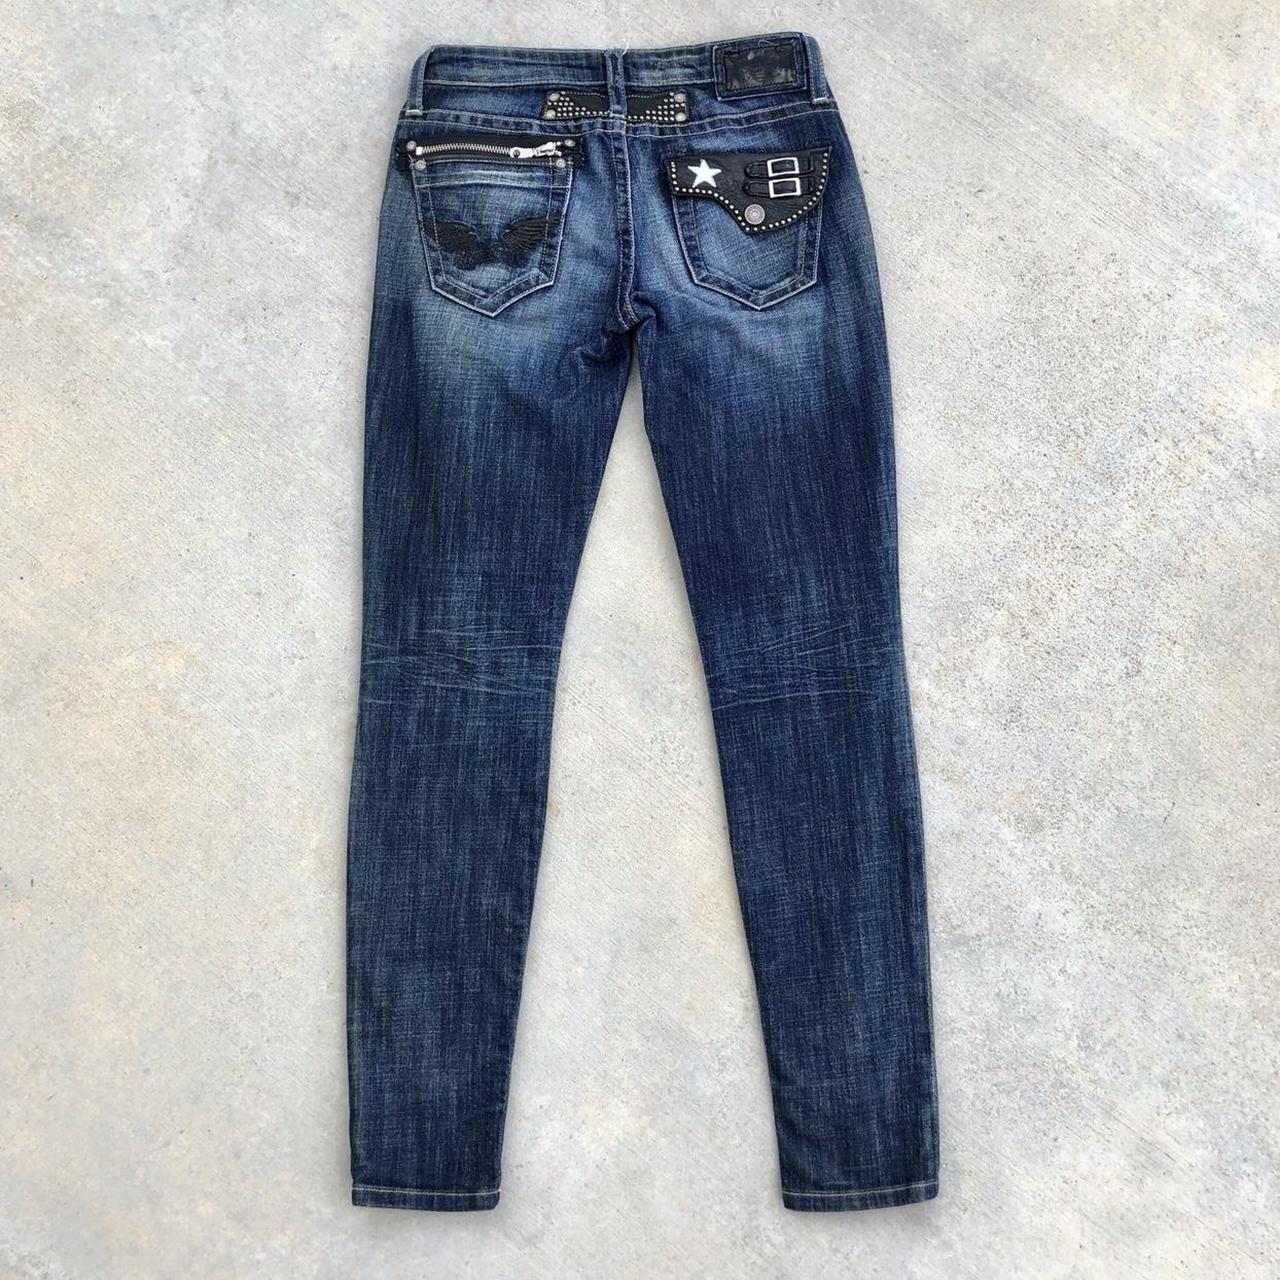 Y2K robins jeans dark wash faded embellished ultra... - Depop